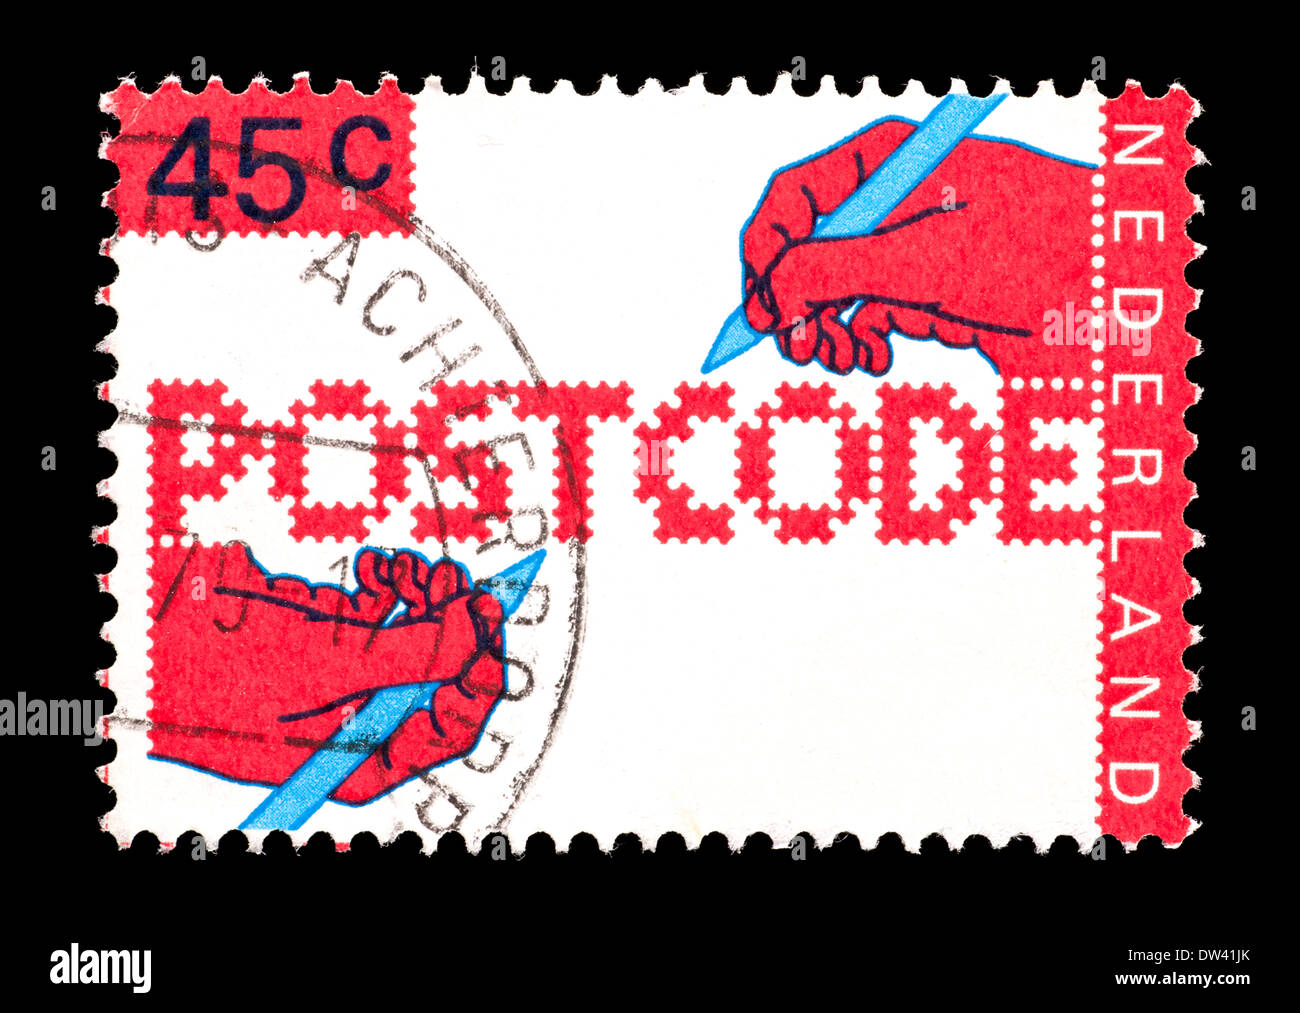 Briefmarke aus den Niederlanden mit beiden Händen schreiben, für die  Einführung der neuen Postleitzahlen ausgestellt Stockfotografie - Alamy